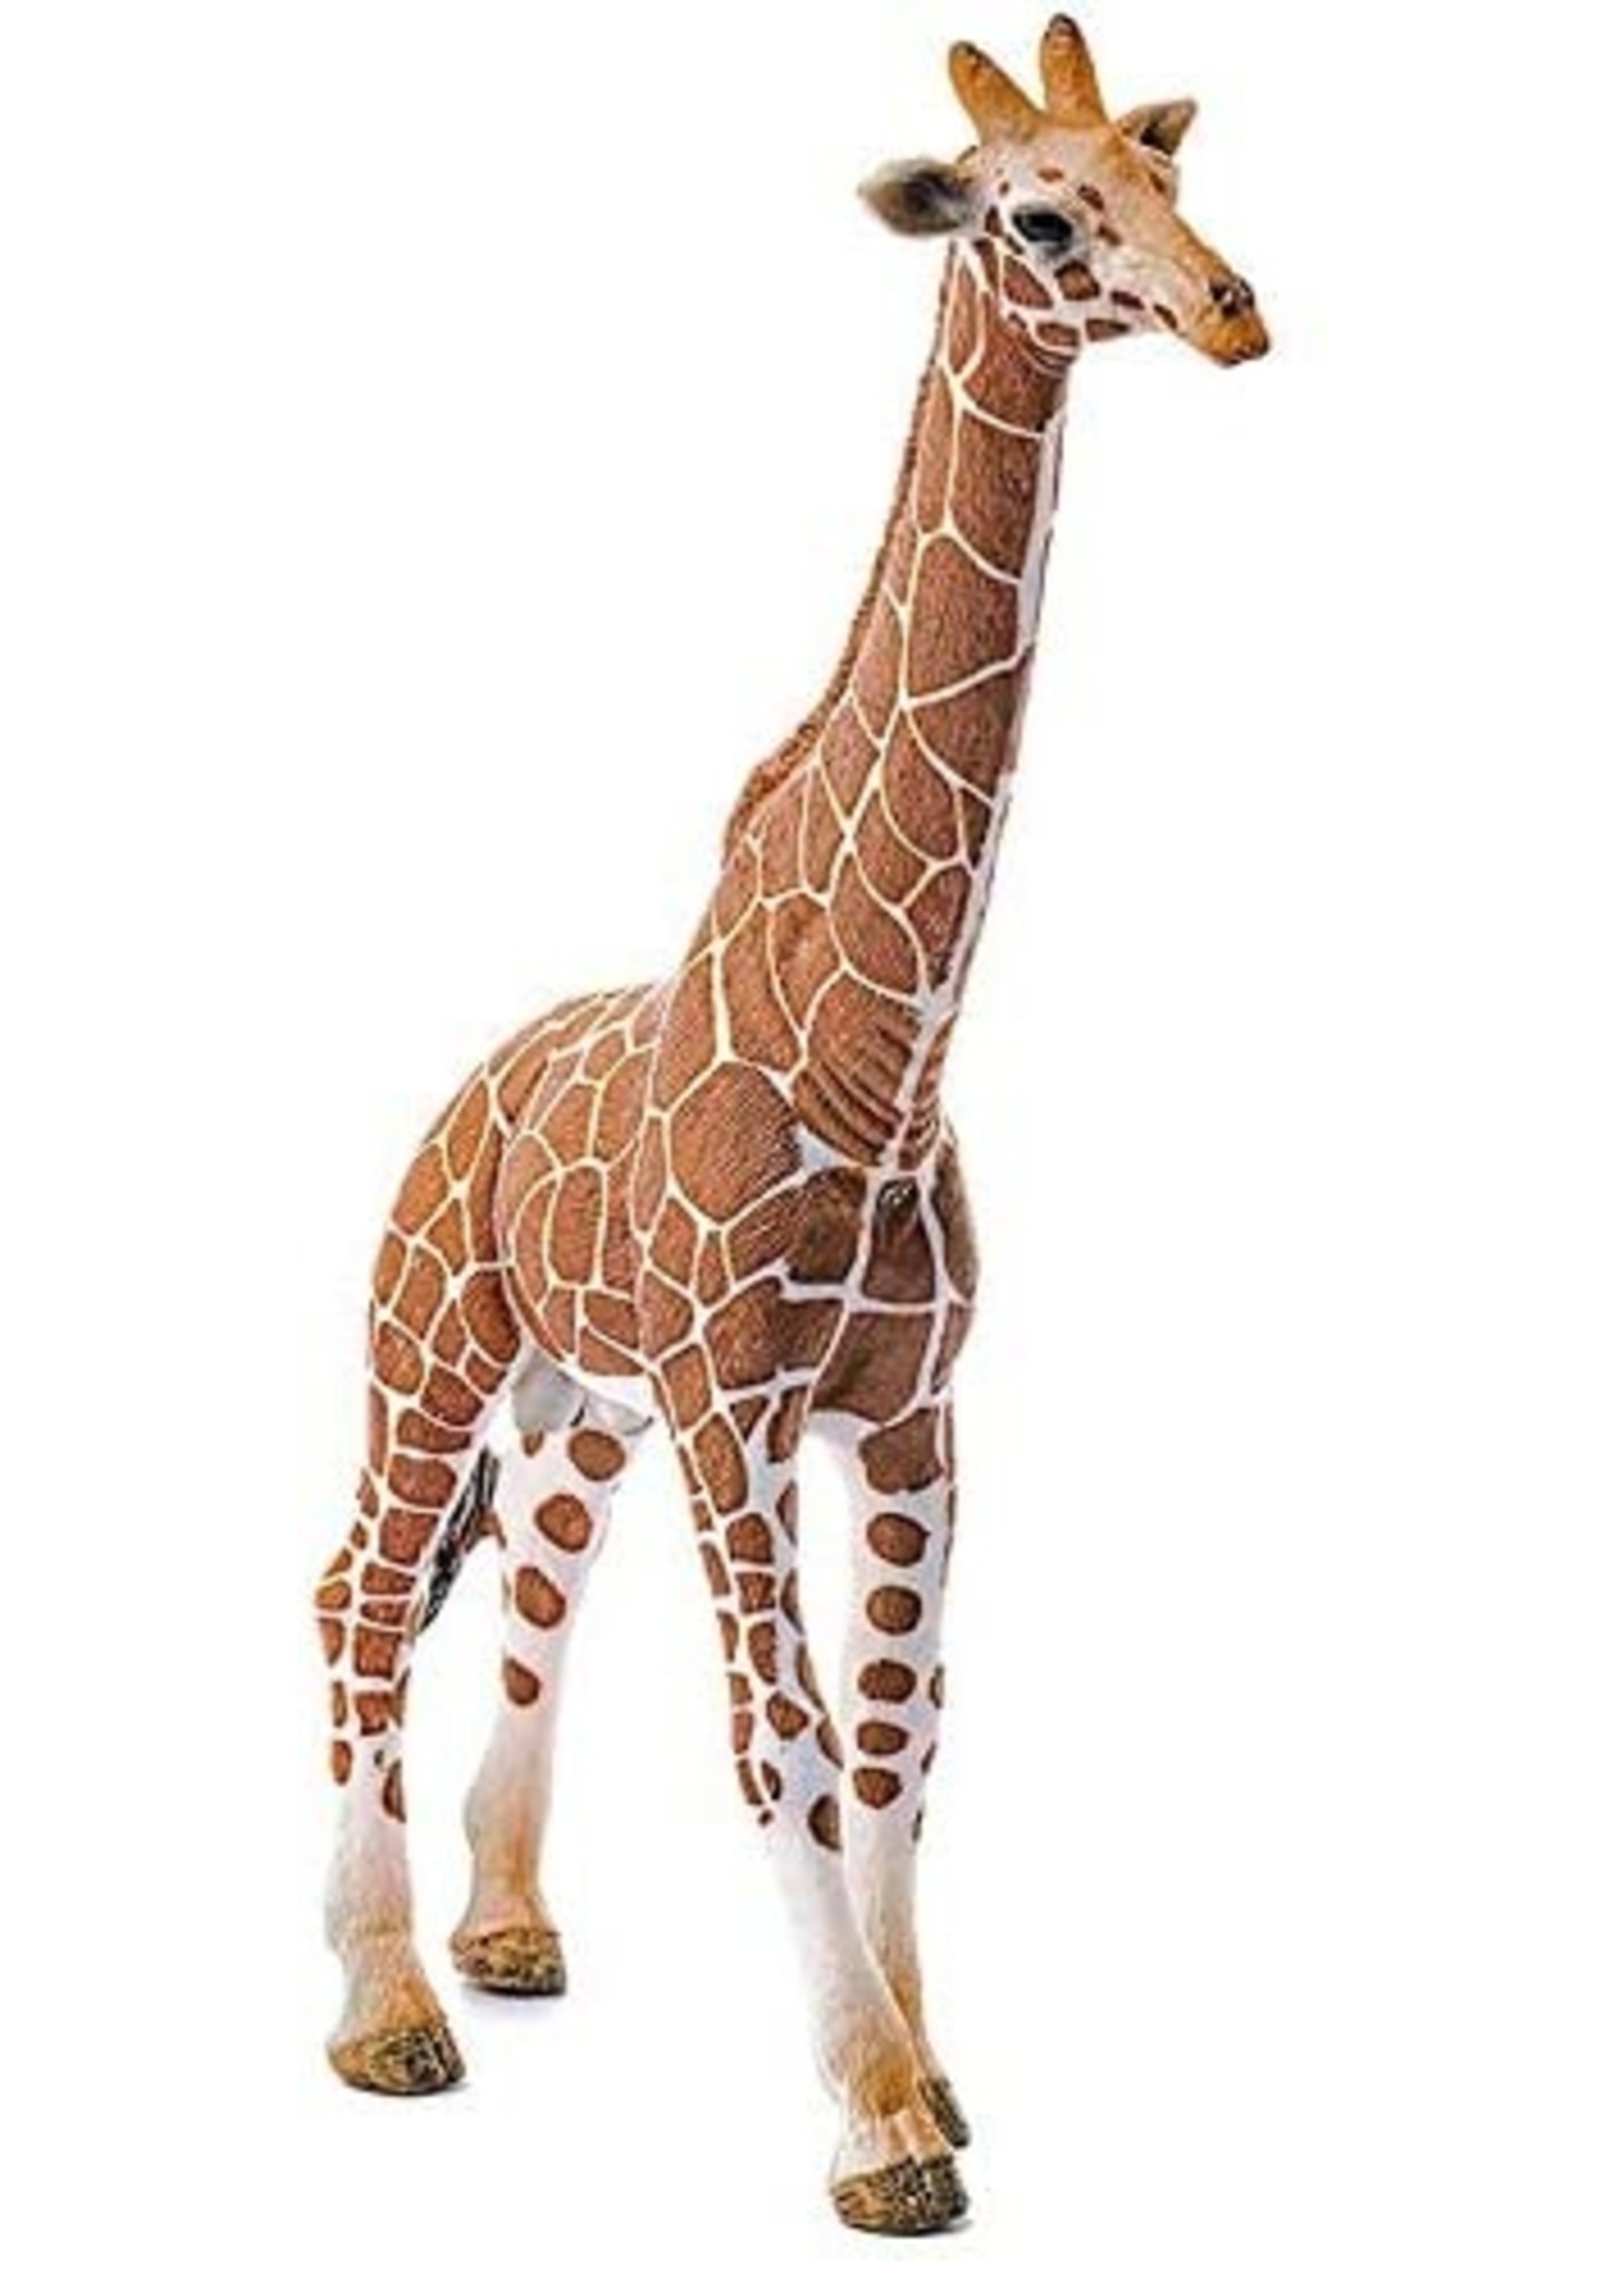 Schleich 14749 - Giraffe, Male